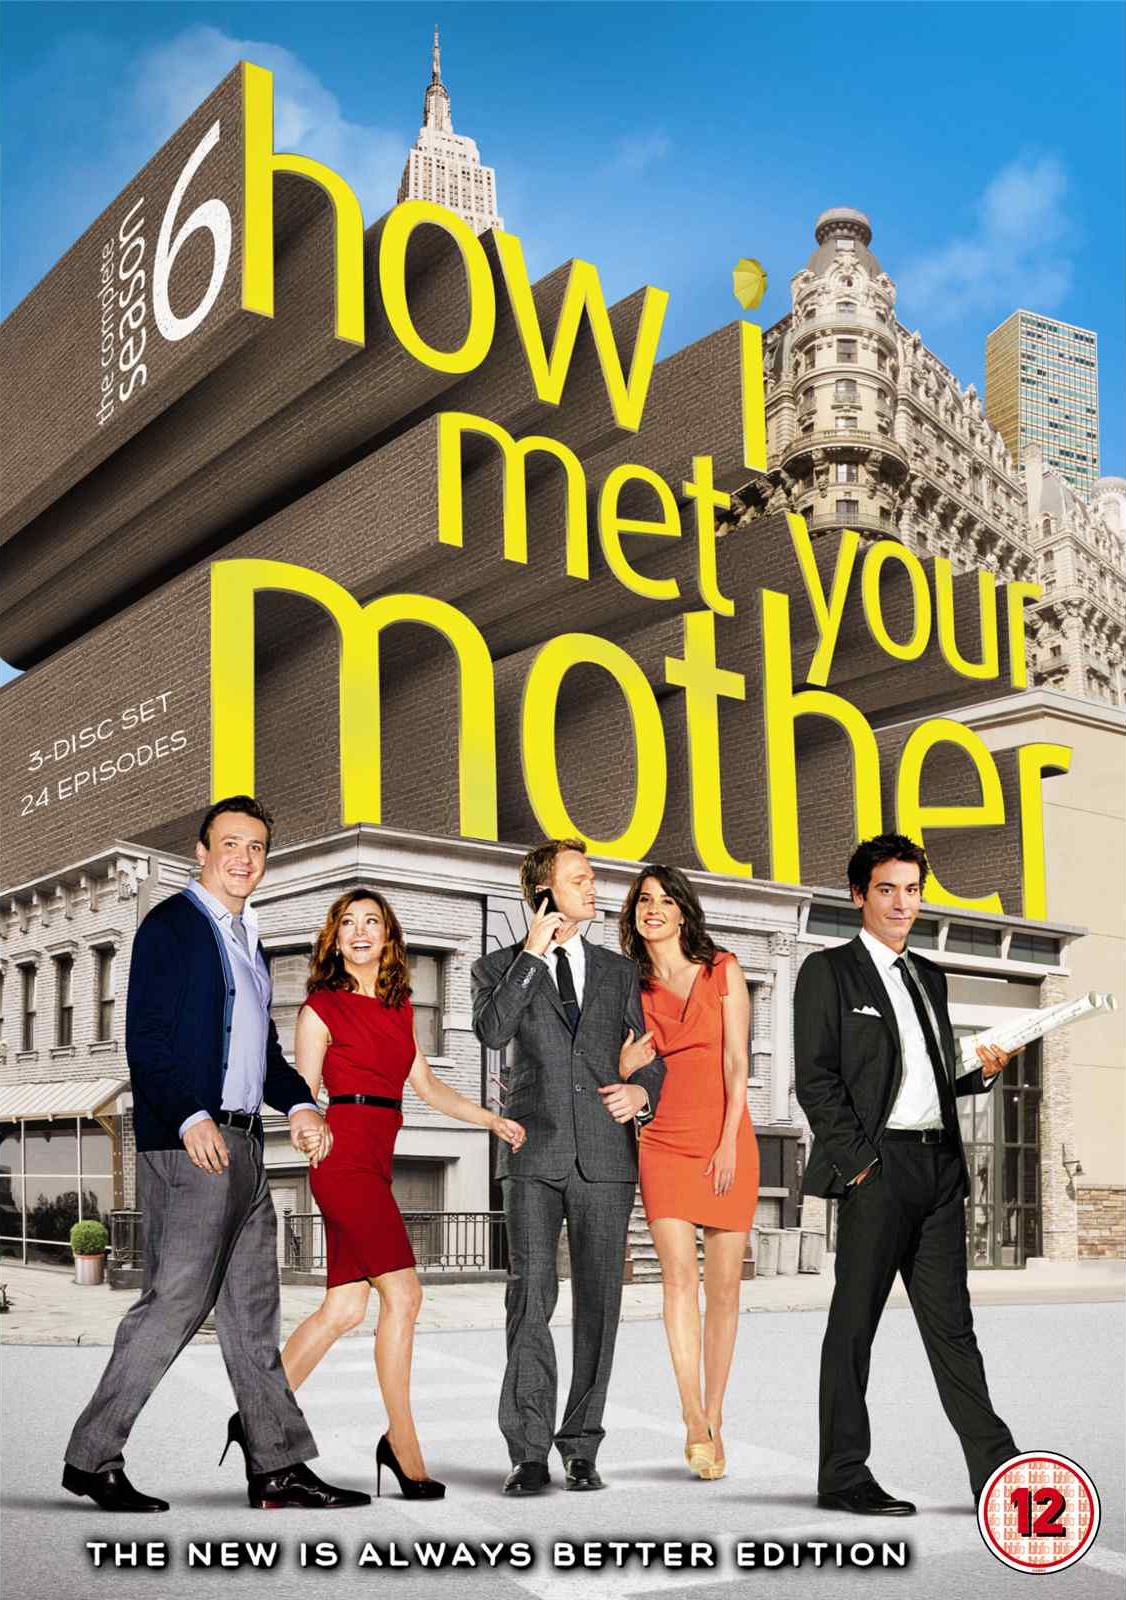 How I Met Your Mother Season 6 Download Full Episodes In Hd 720p Tvstock